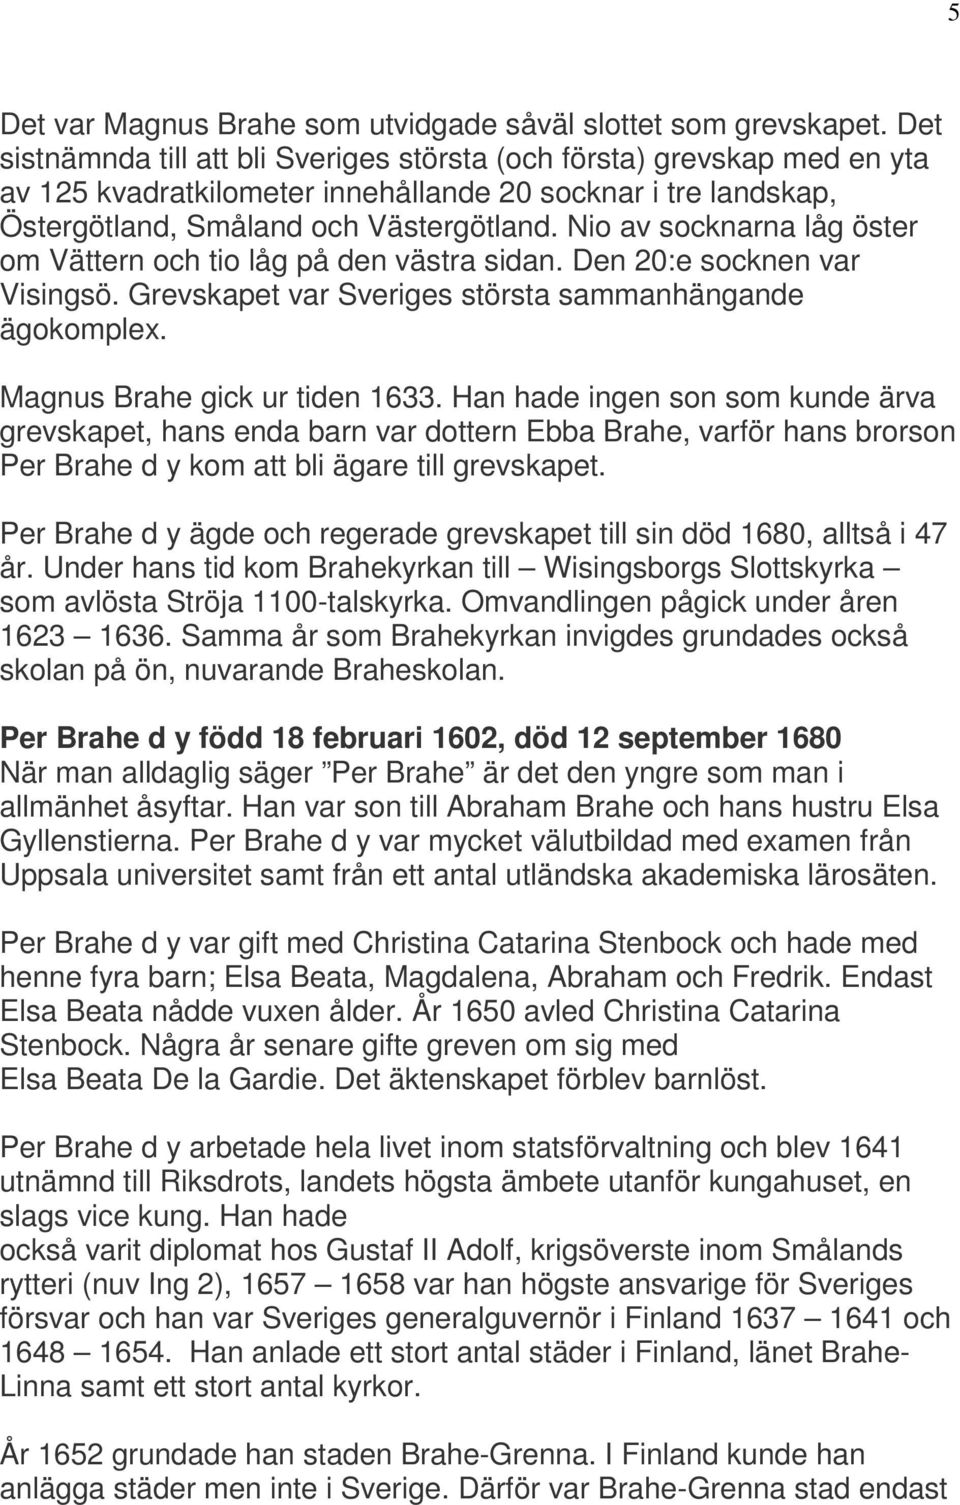 Nio av socknarna låg öster om Vättern och tio låg på den västra sidan. Den 20:e socknen var Visingsö. Grevskapet var Sveriges största sammanhängande ägokomplex. Magnus Brahe gick ur tiden 1633.